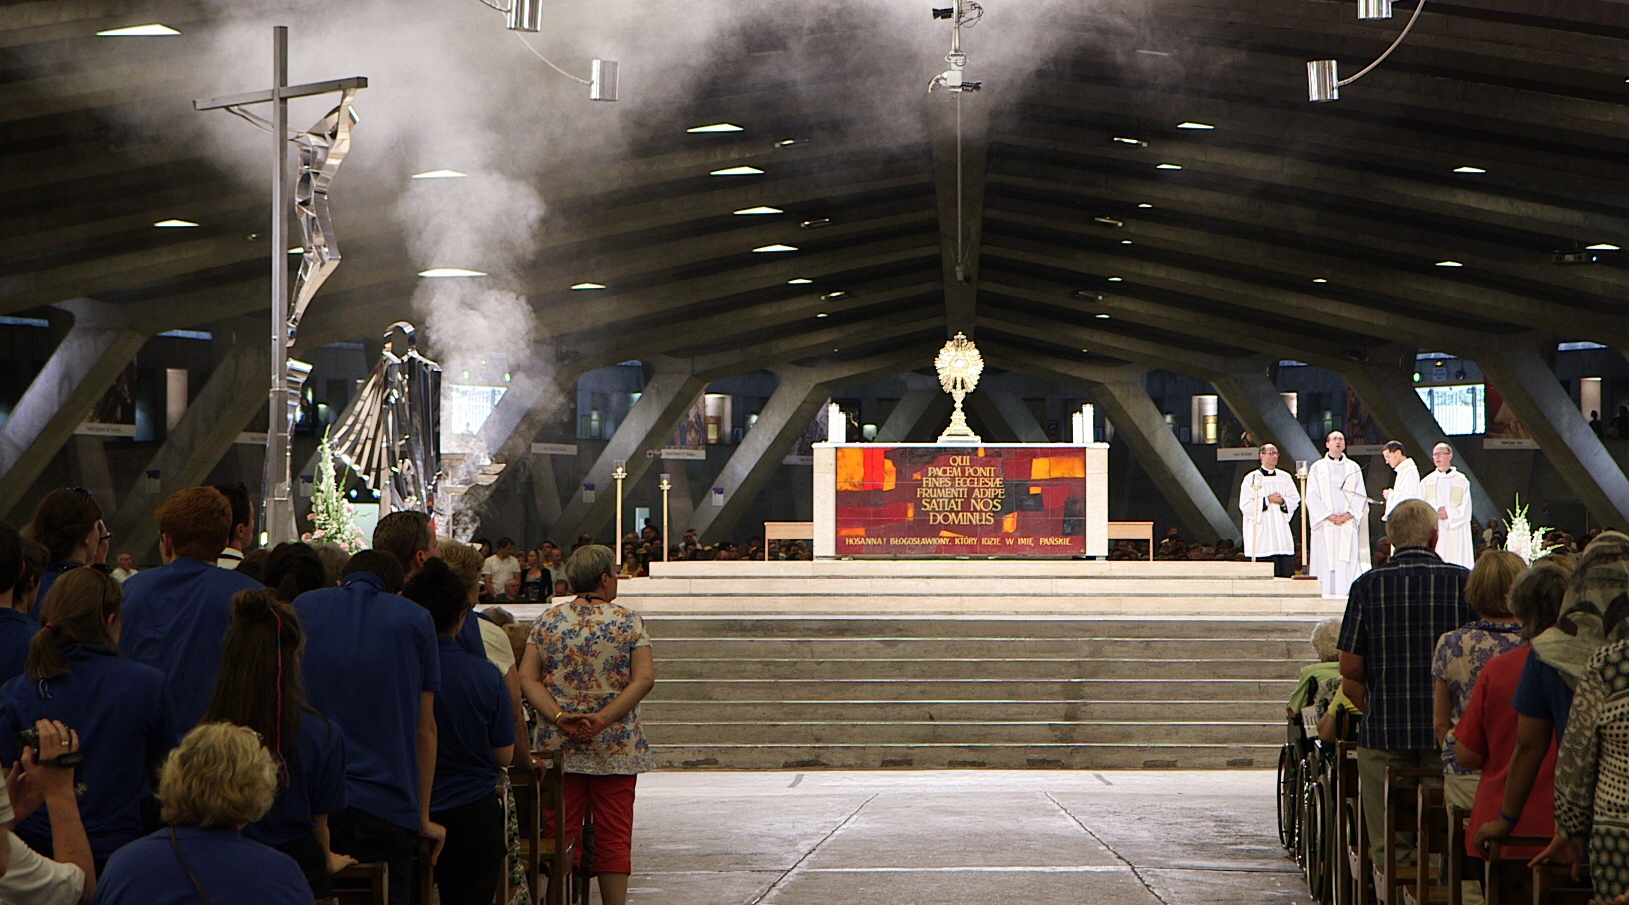 Impresionante Filmación de una Hostia Levitando en el altar en Misa